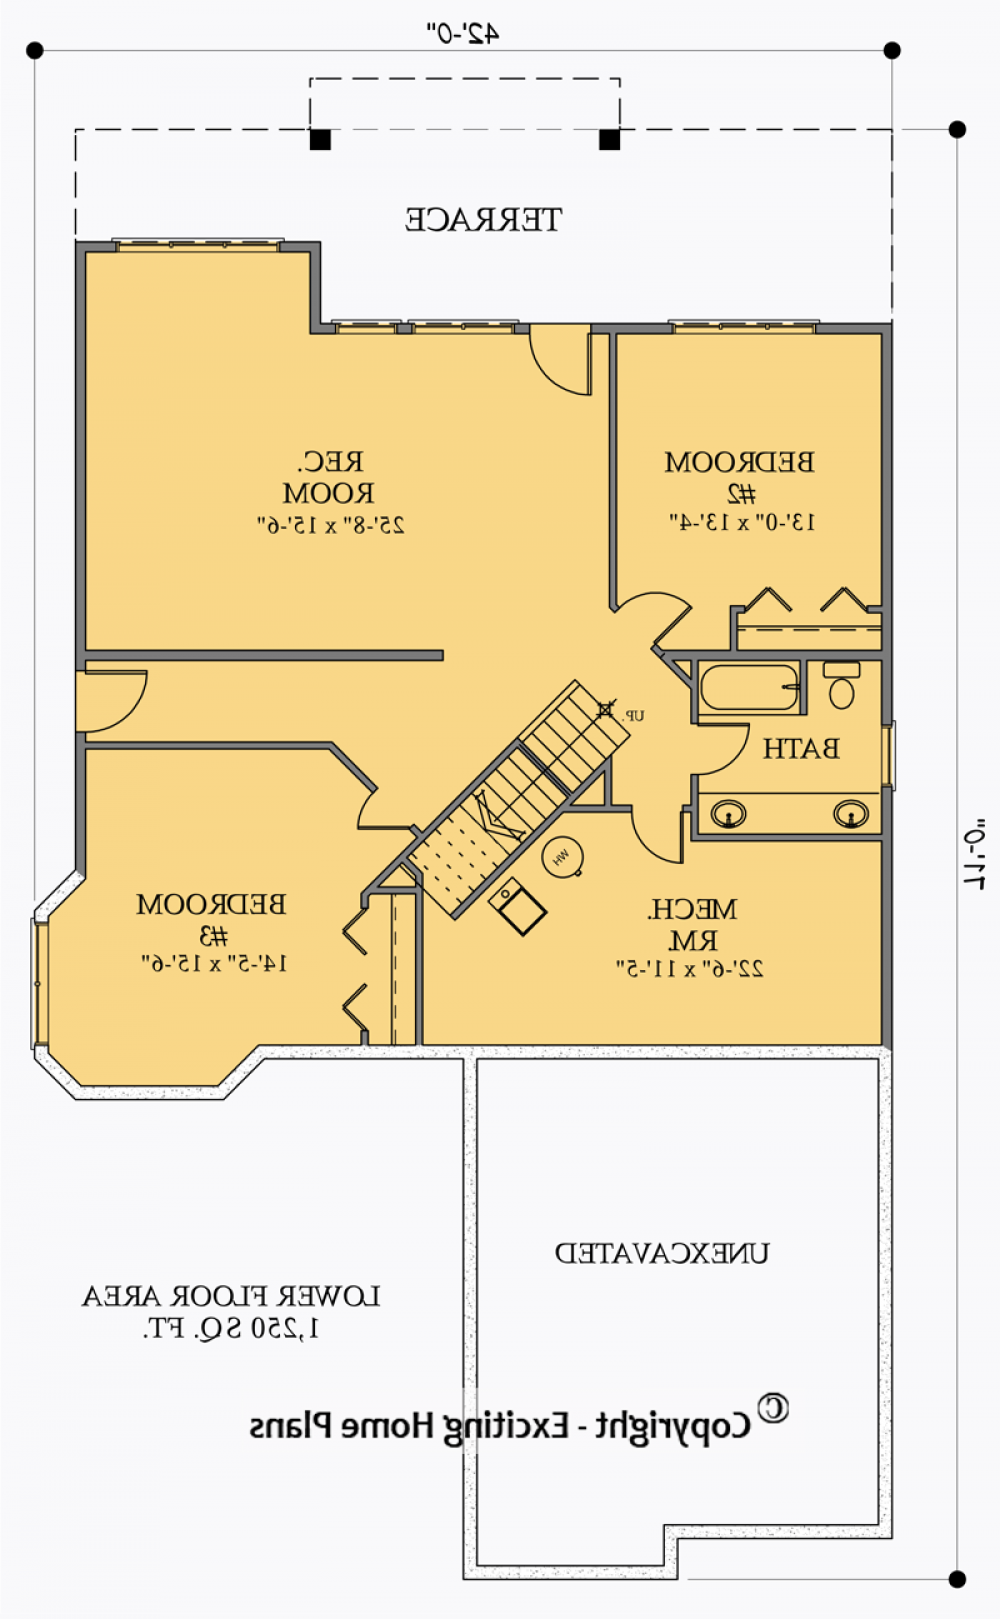 House Plan E1054-10 Lower Floor Plan REVERSE